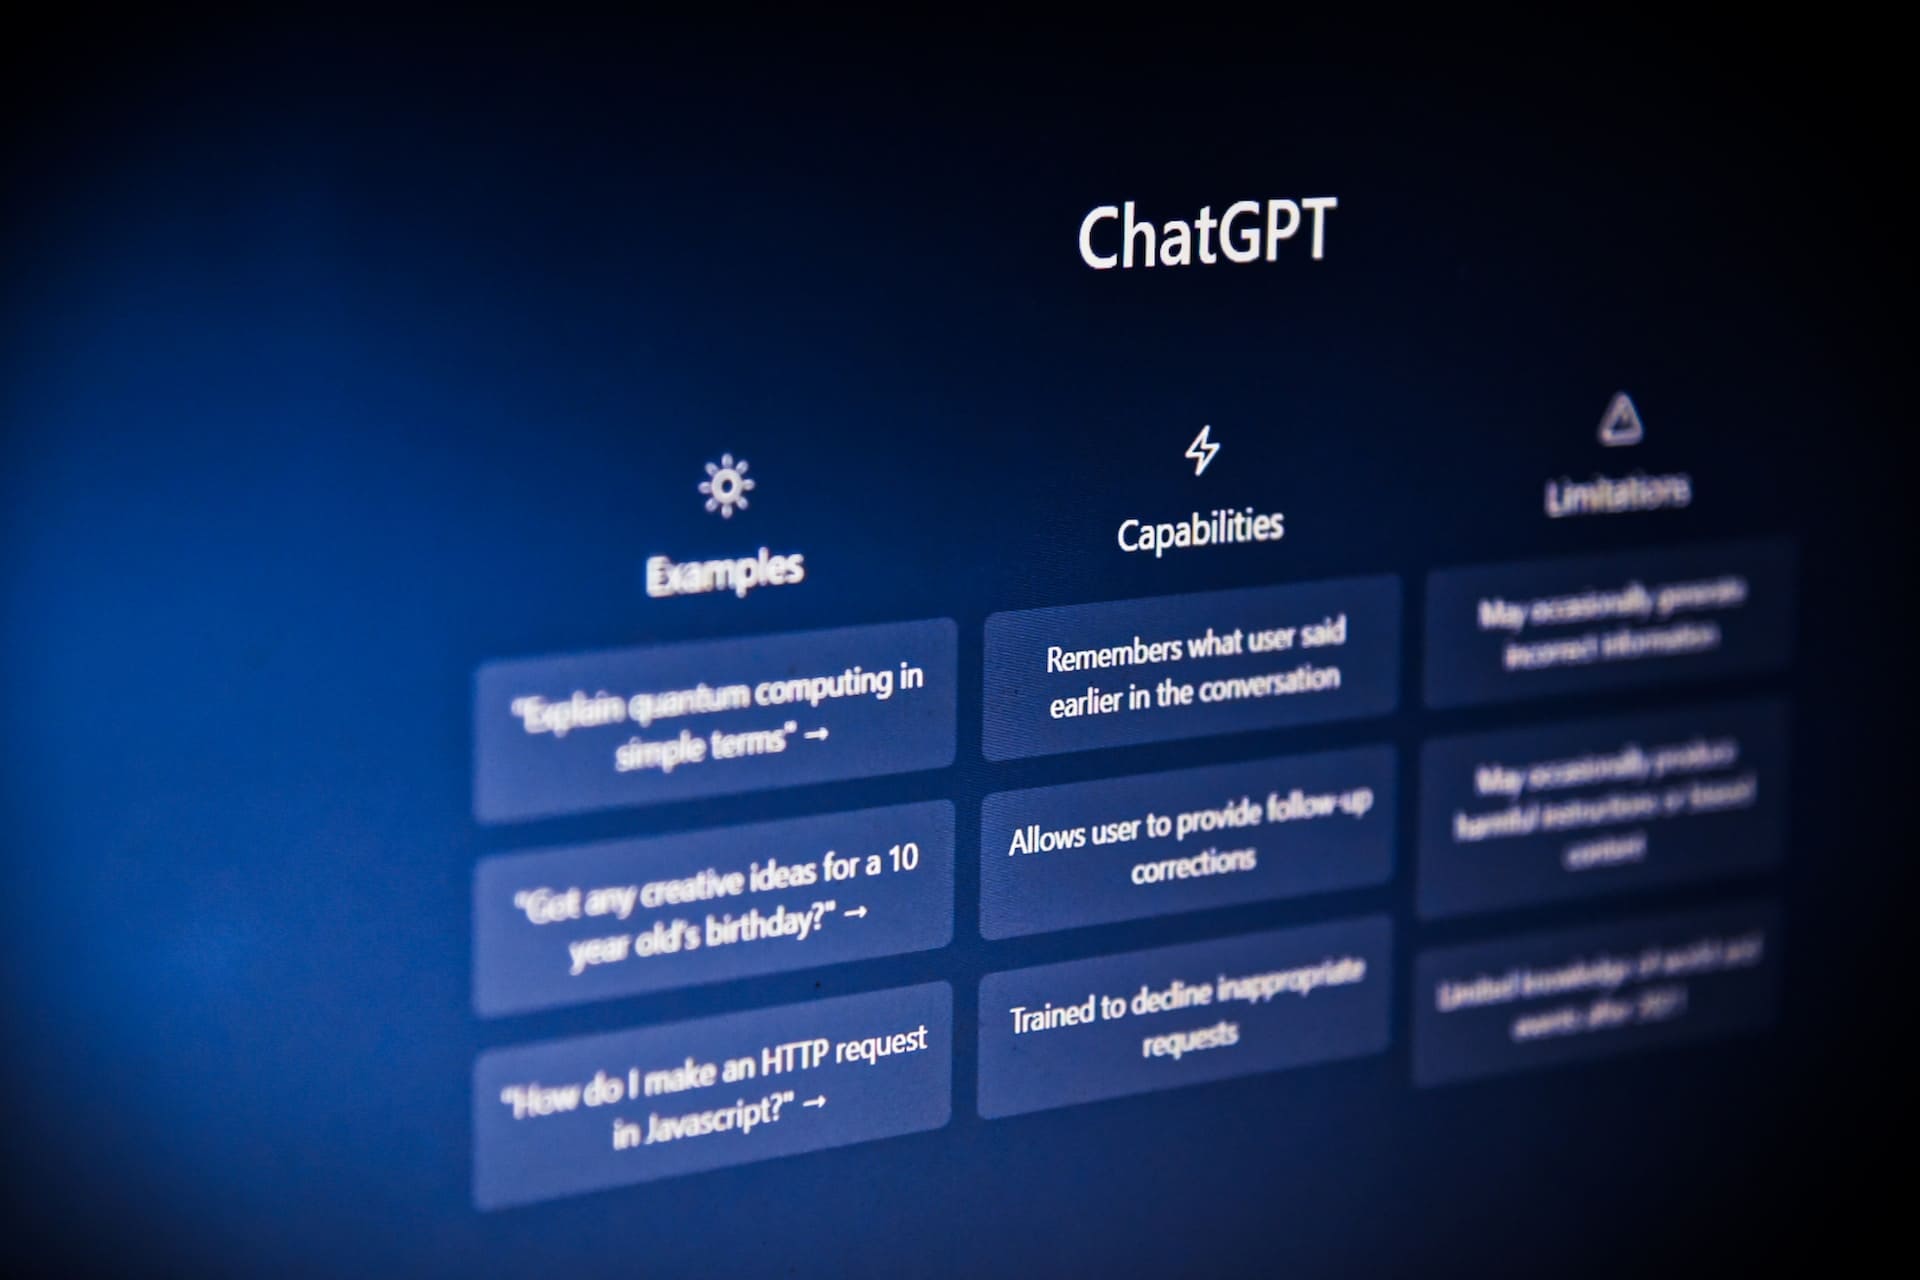 O que é o ChatGPT?